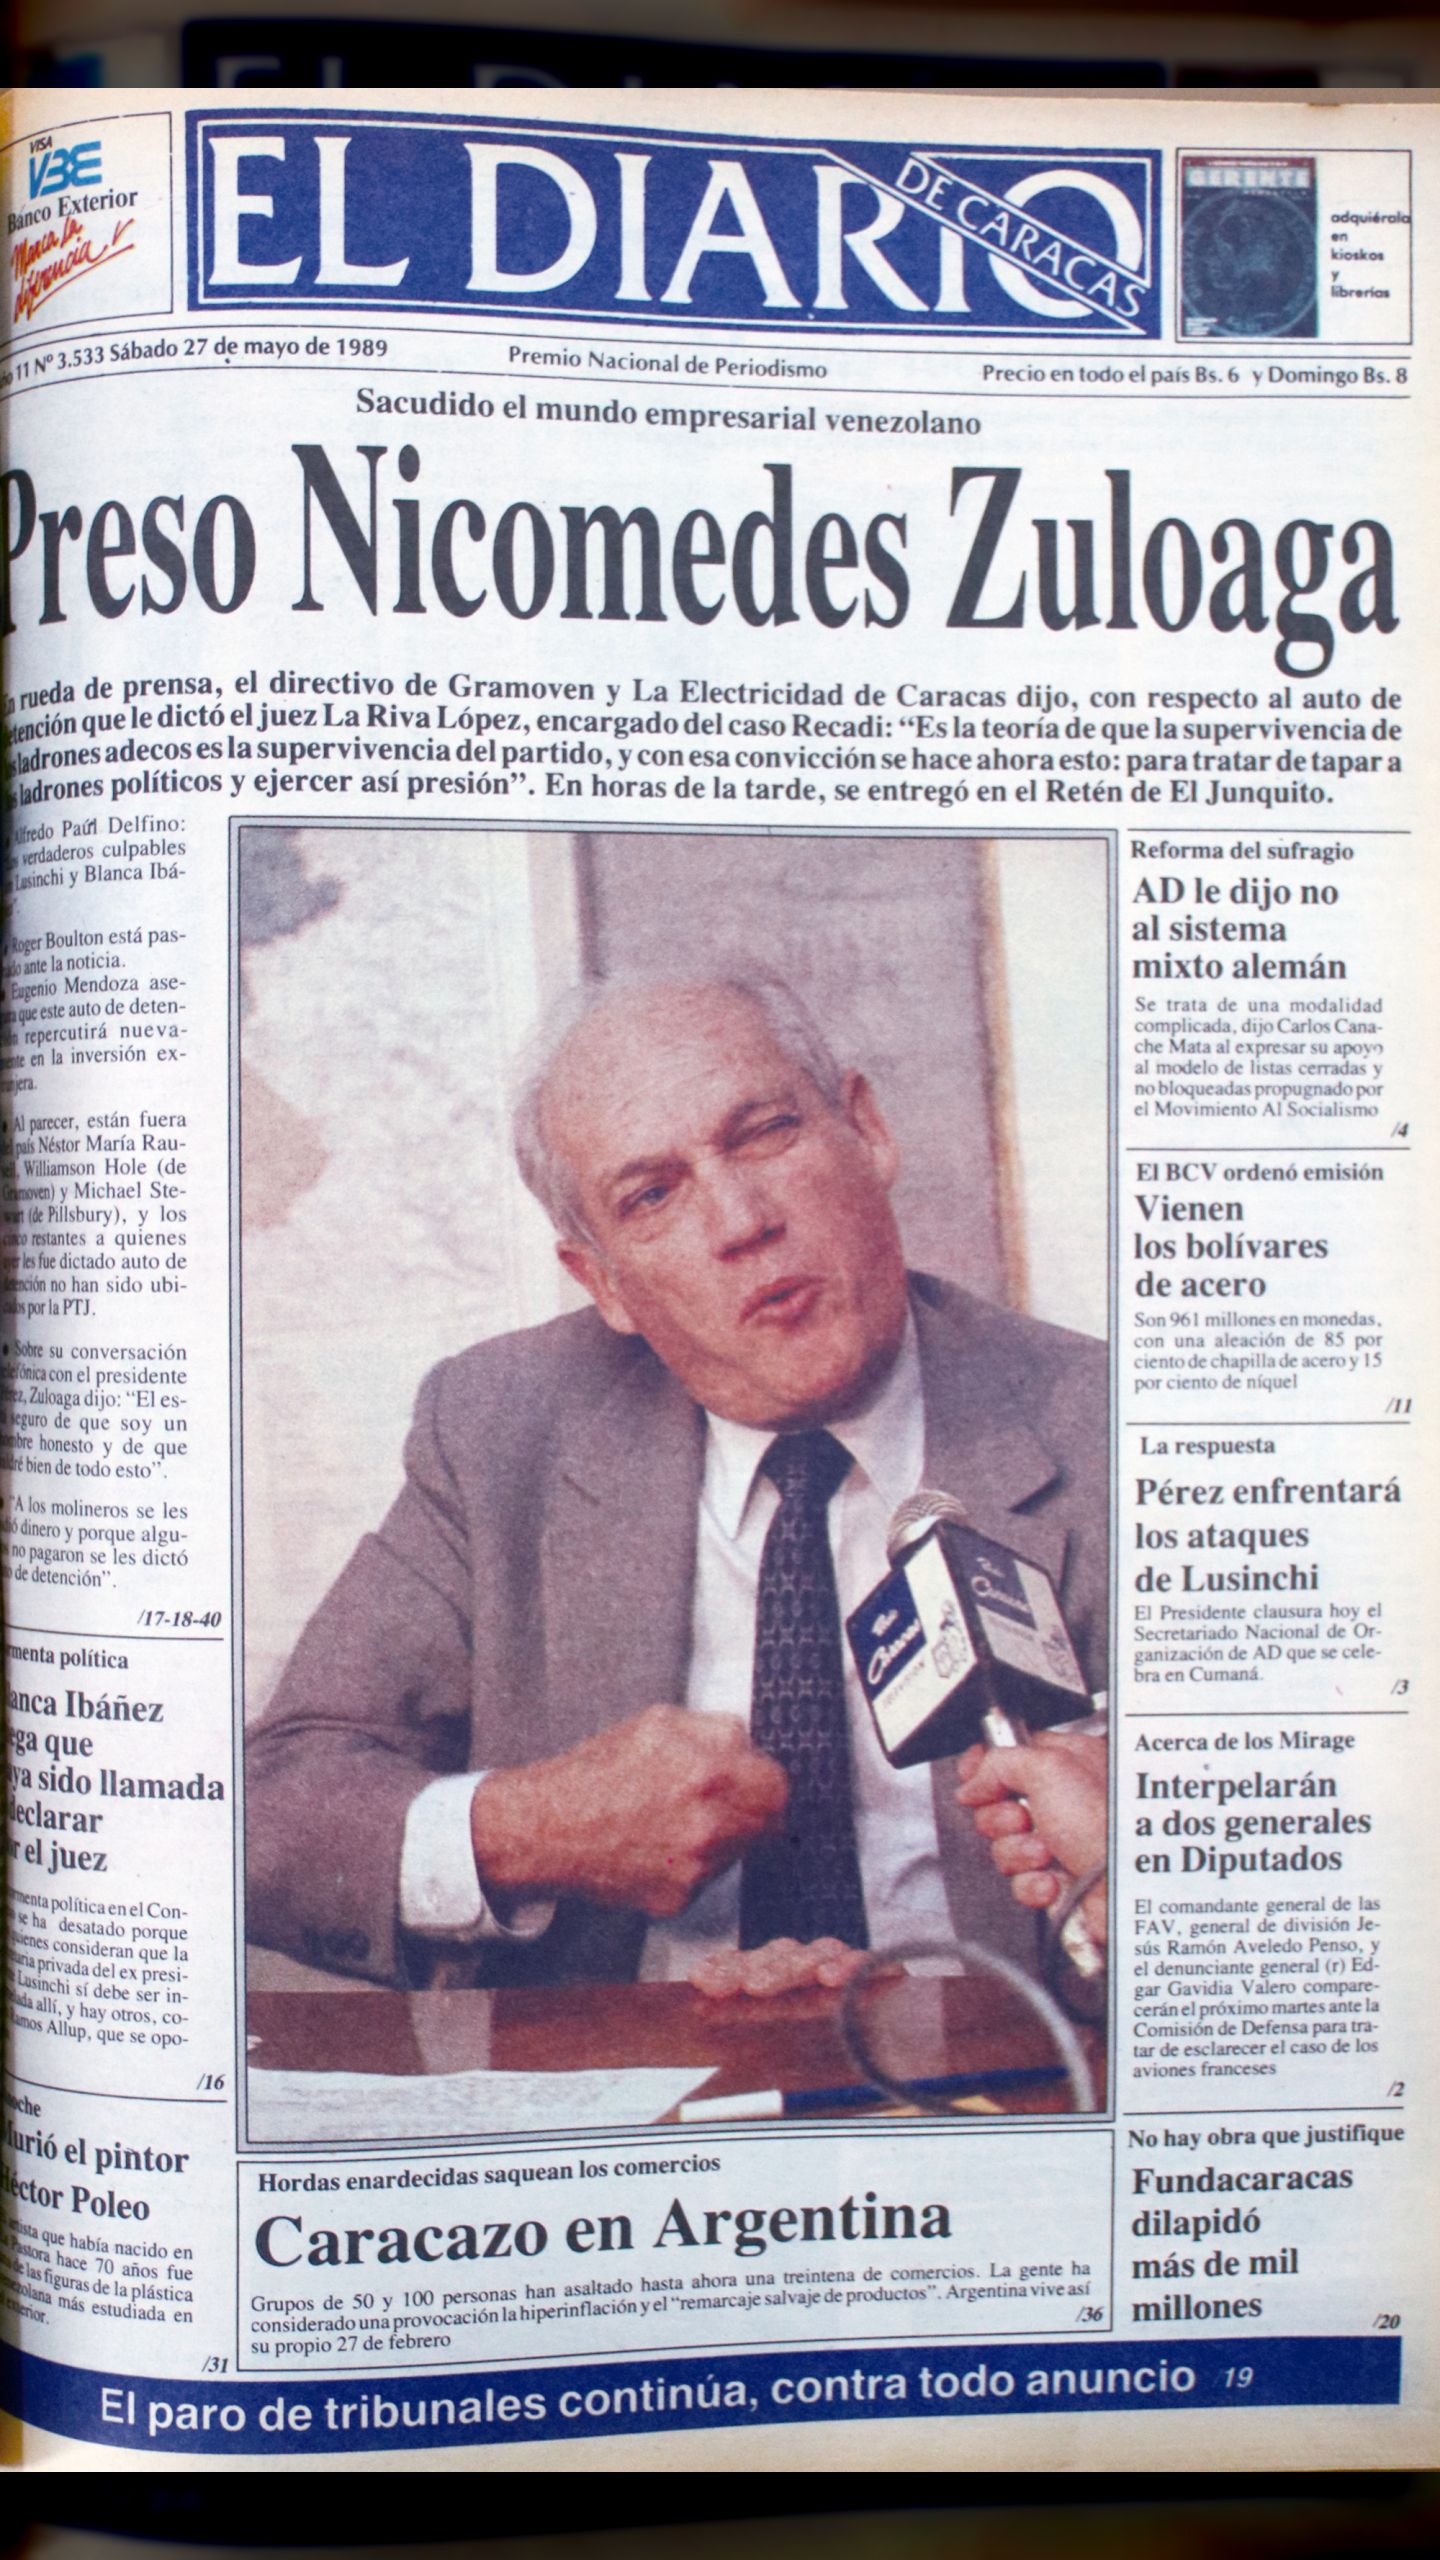 Preso Nicomedes Zuloaga (Diario de Caracas, 27 de mayo 1989)